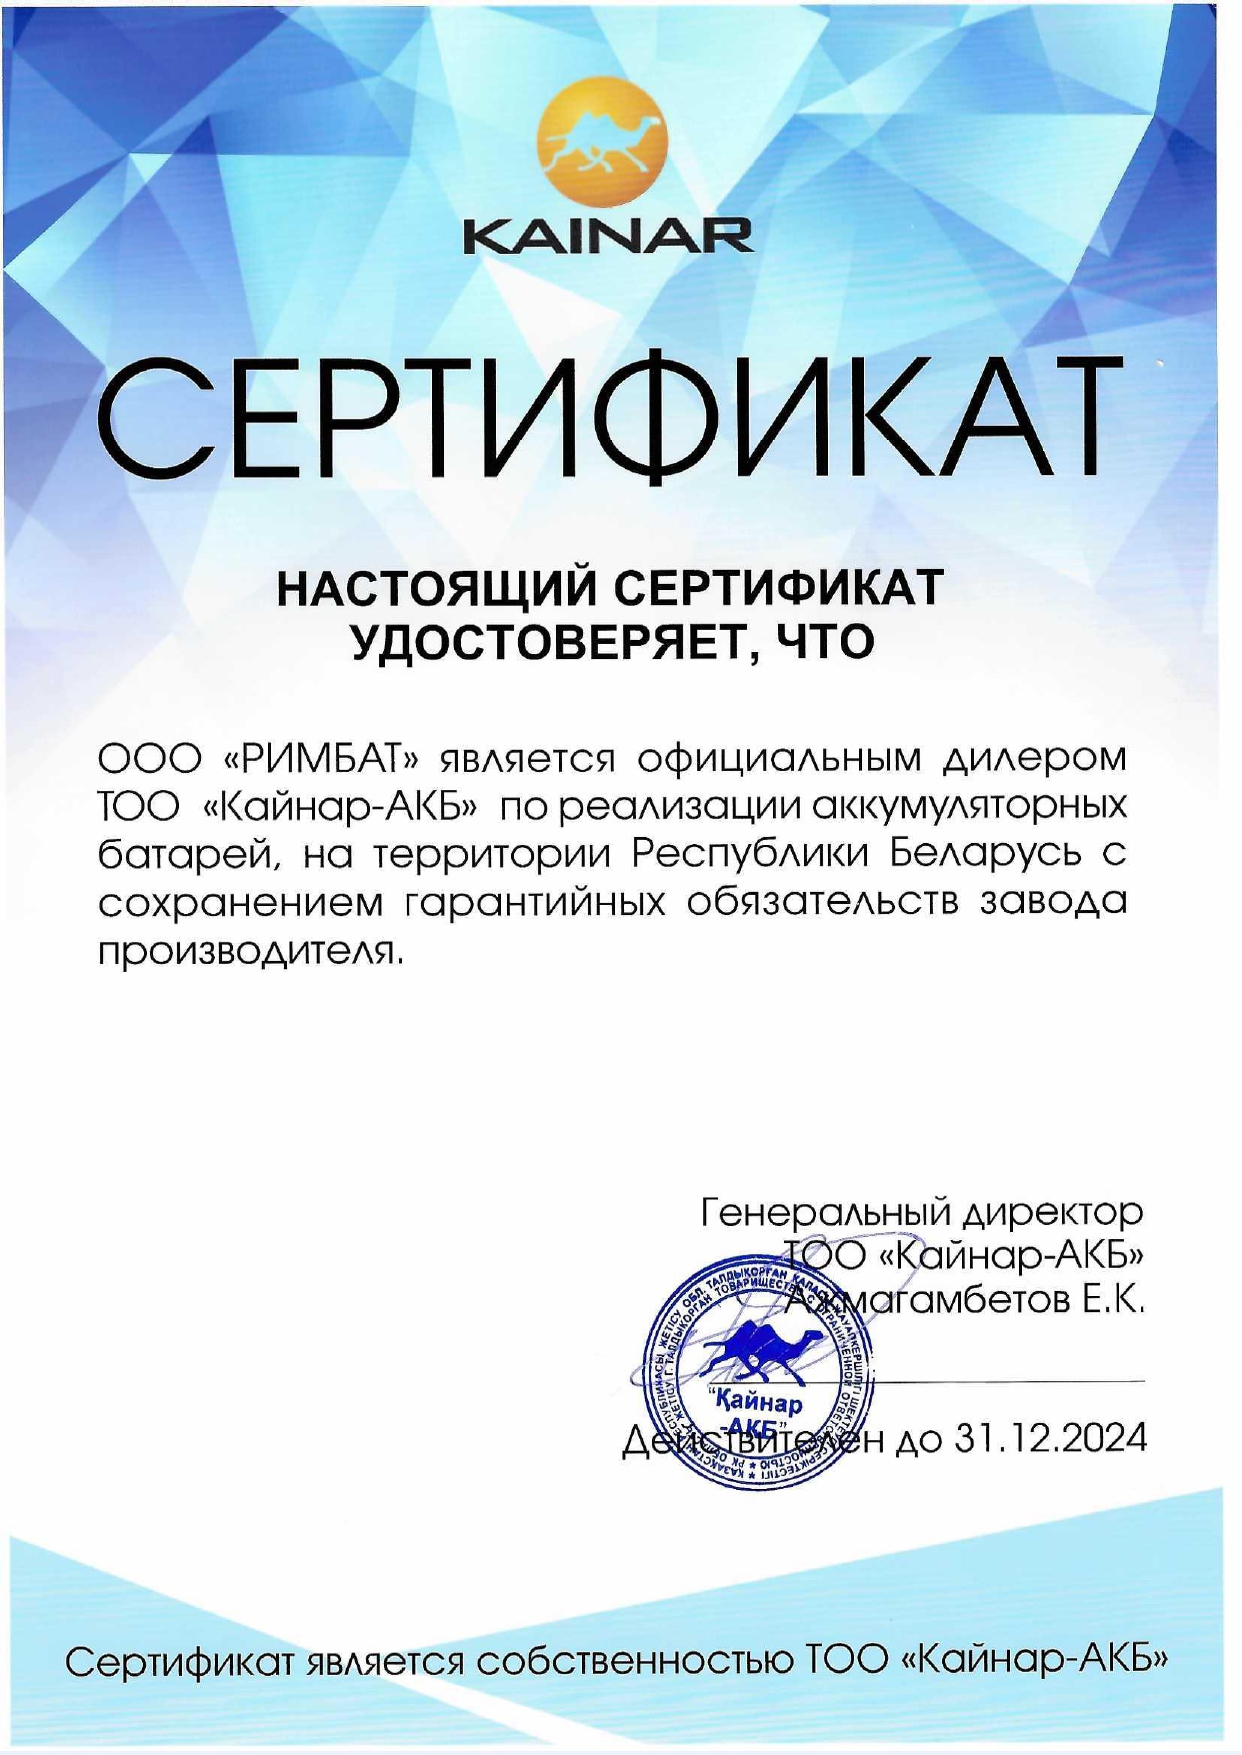 Сертификат дилера Кайнар